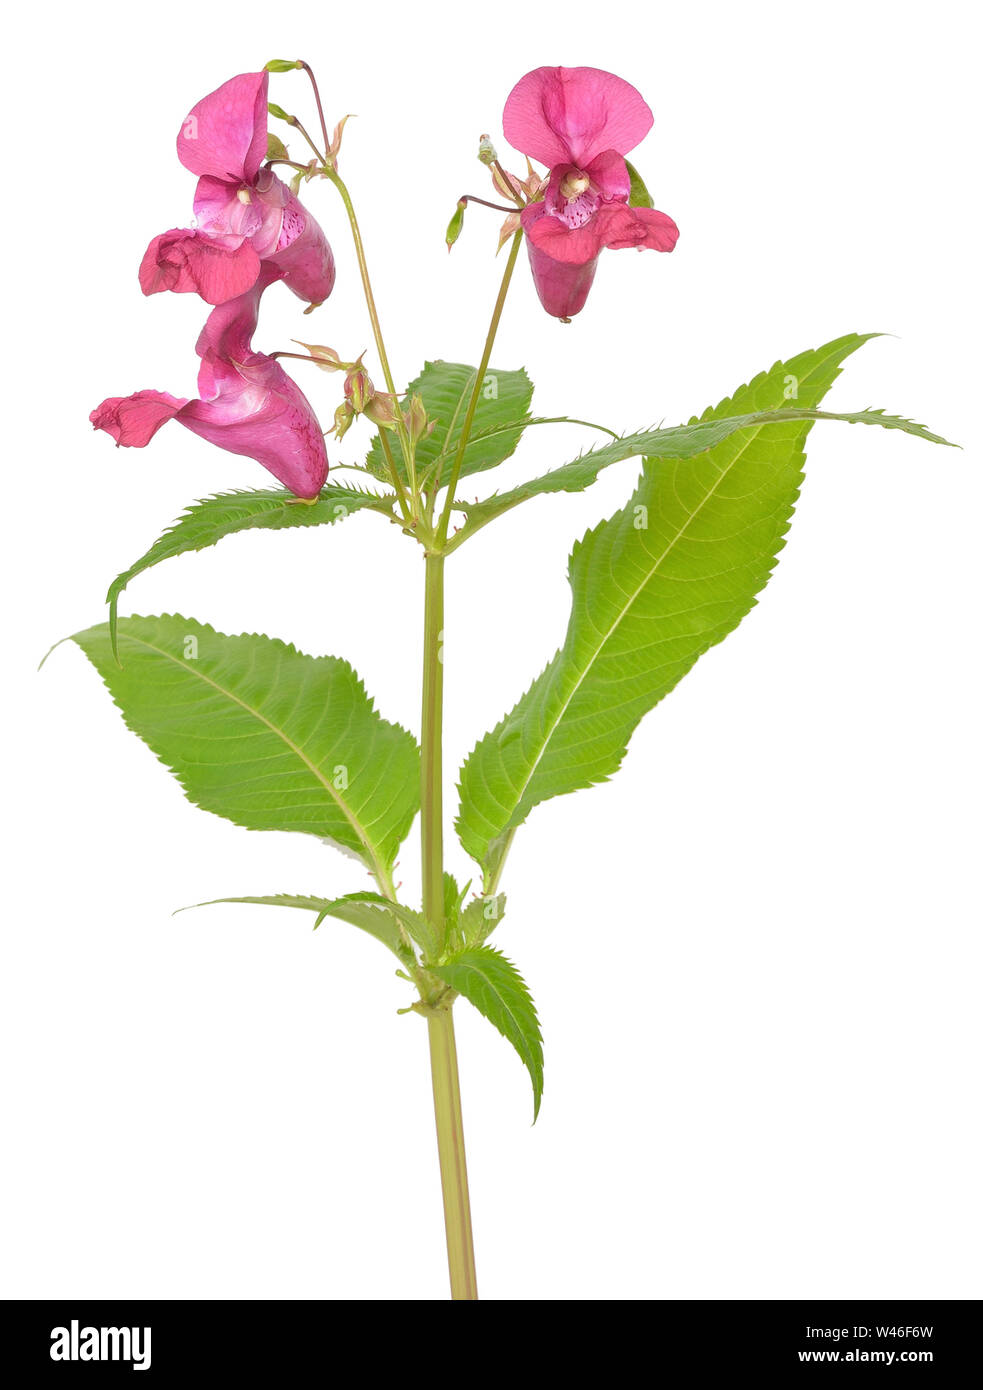 Impatiens glandulifera flower isolated on white background Stock Photo